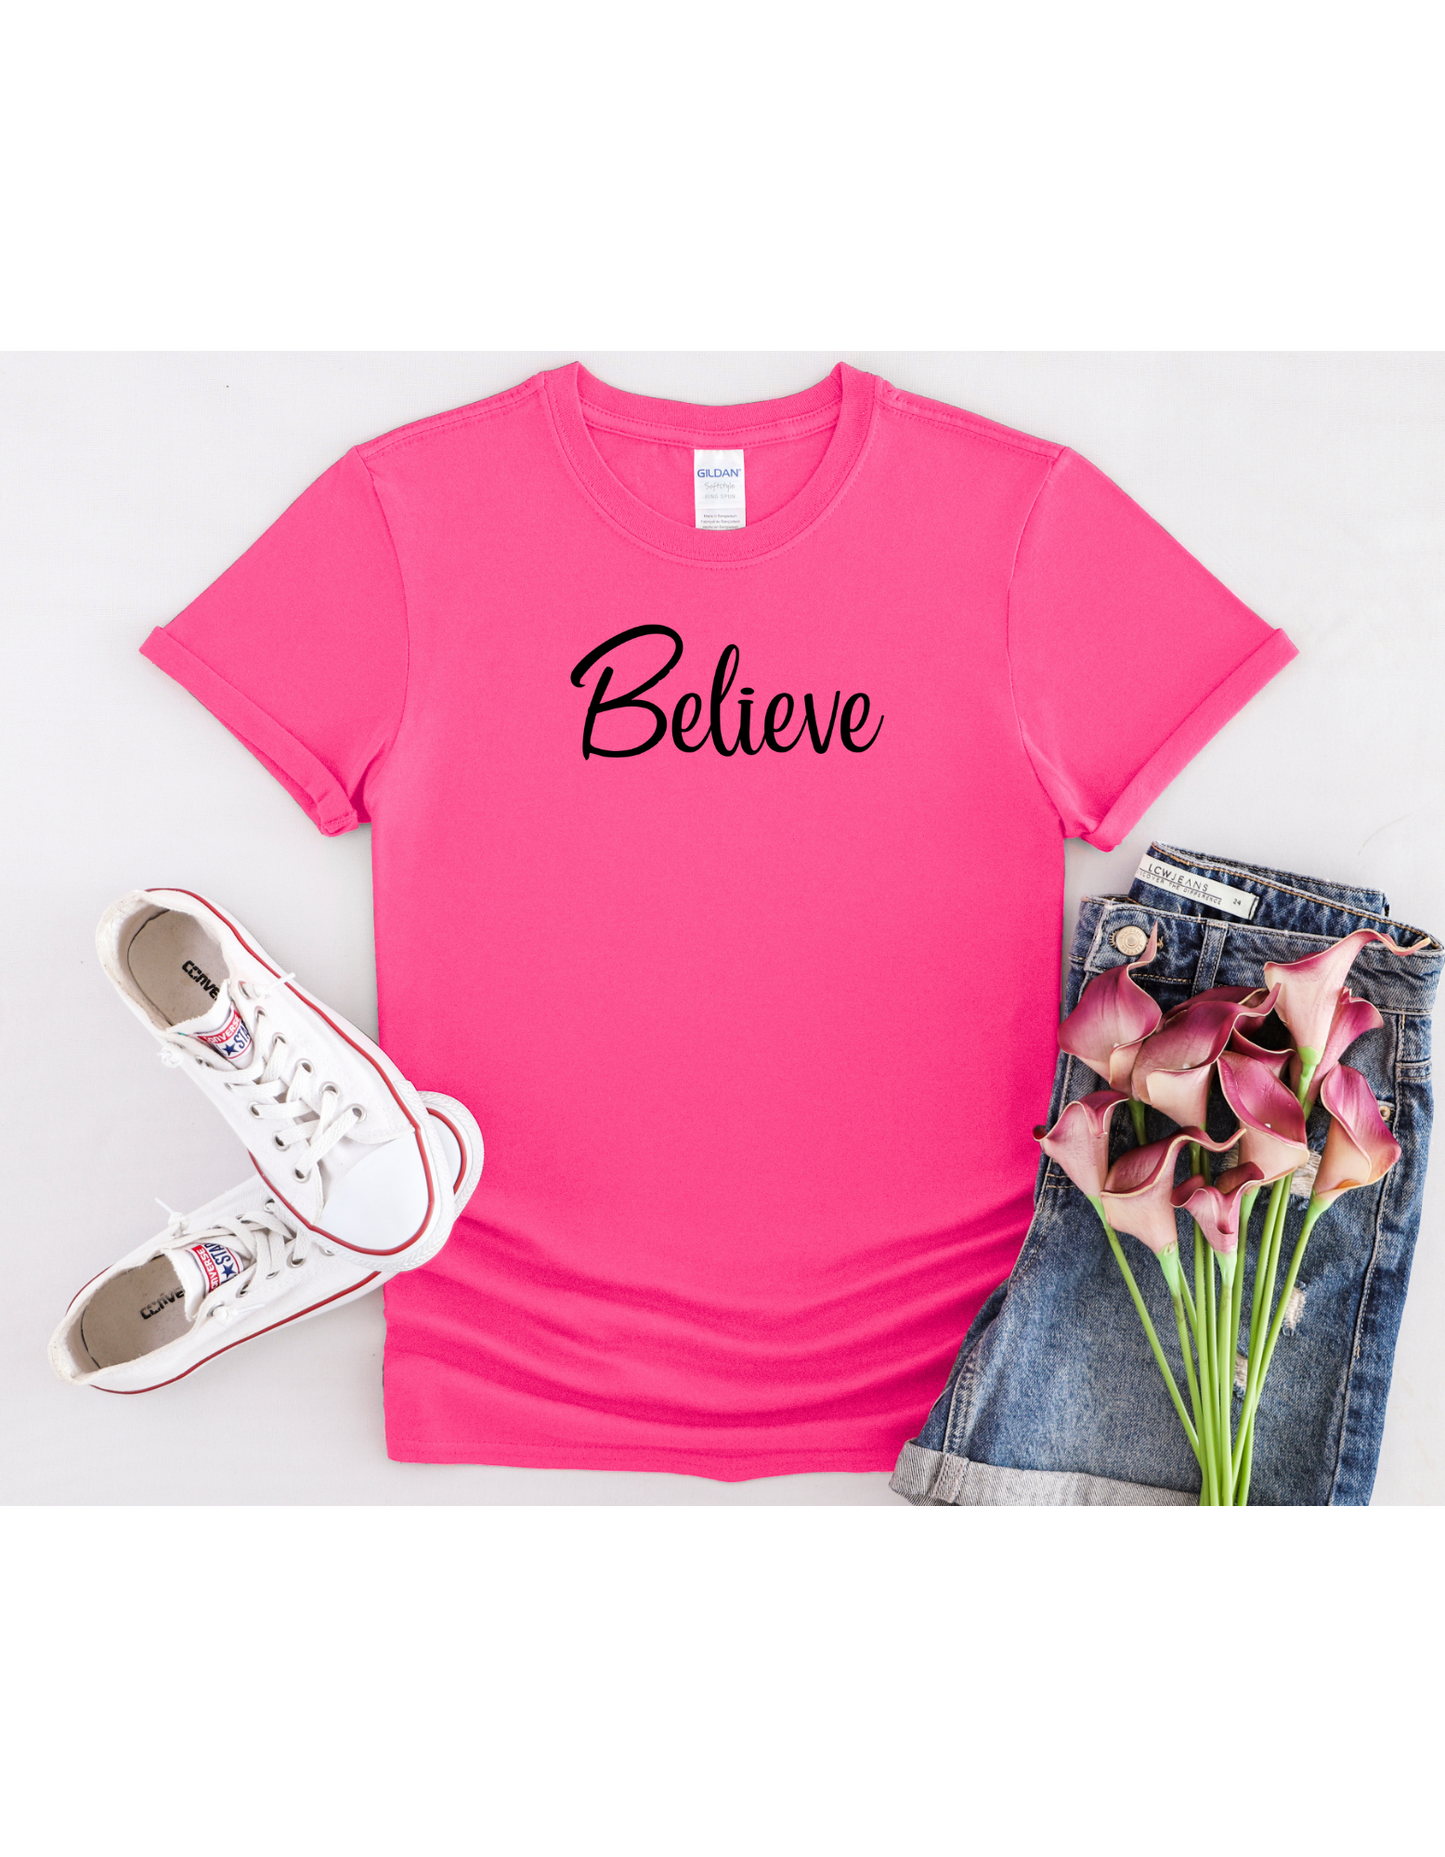 Believe Motivational Shirt, Inspirational Tee, Affirmation Shirt, Christian Shirt